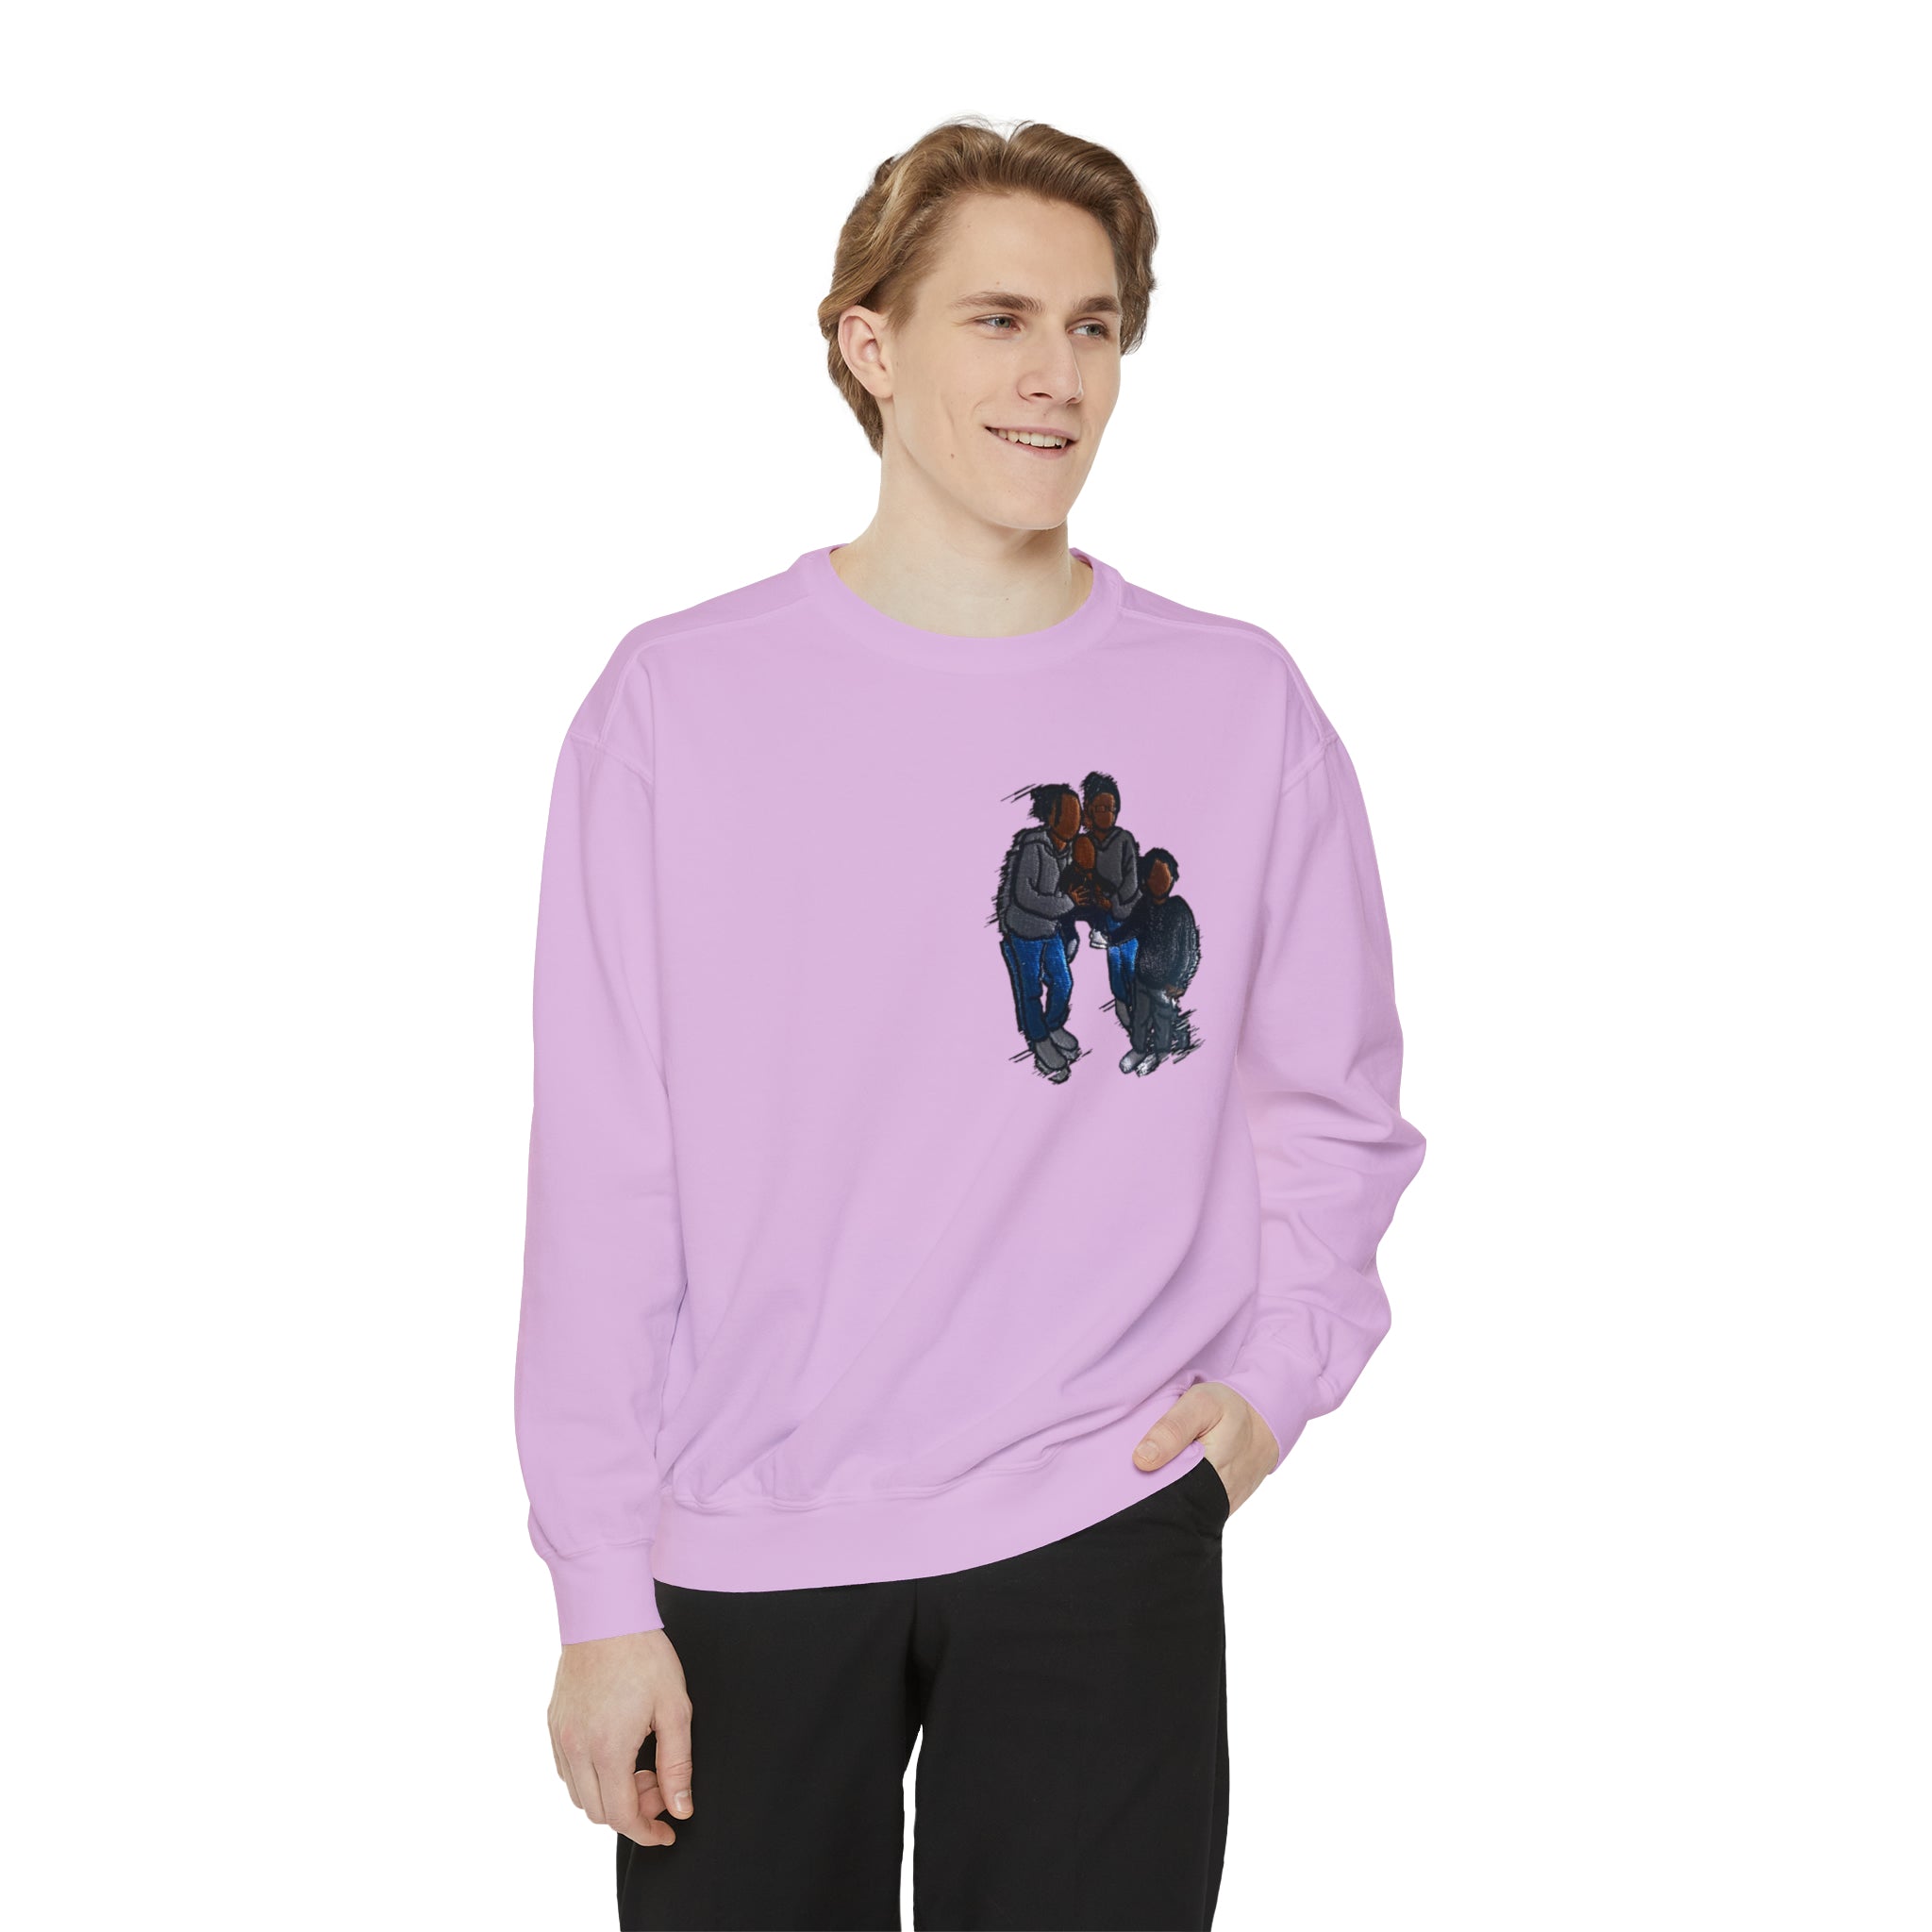 Siblings Garment-Dyed Sweatshirt